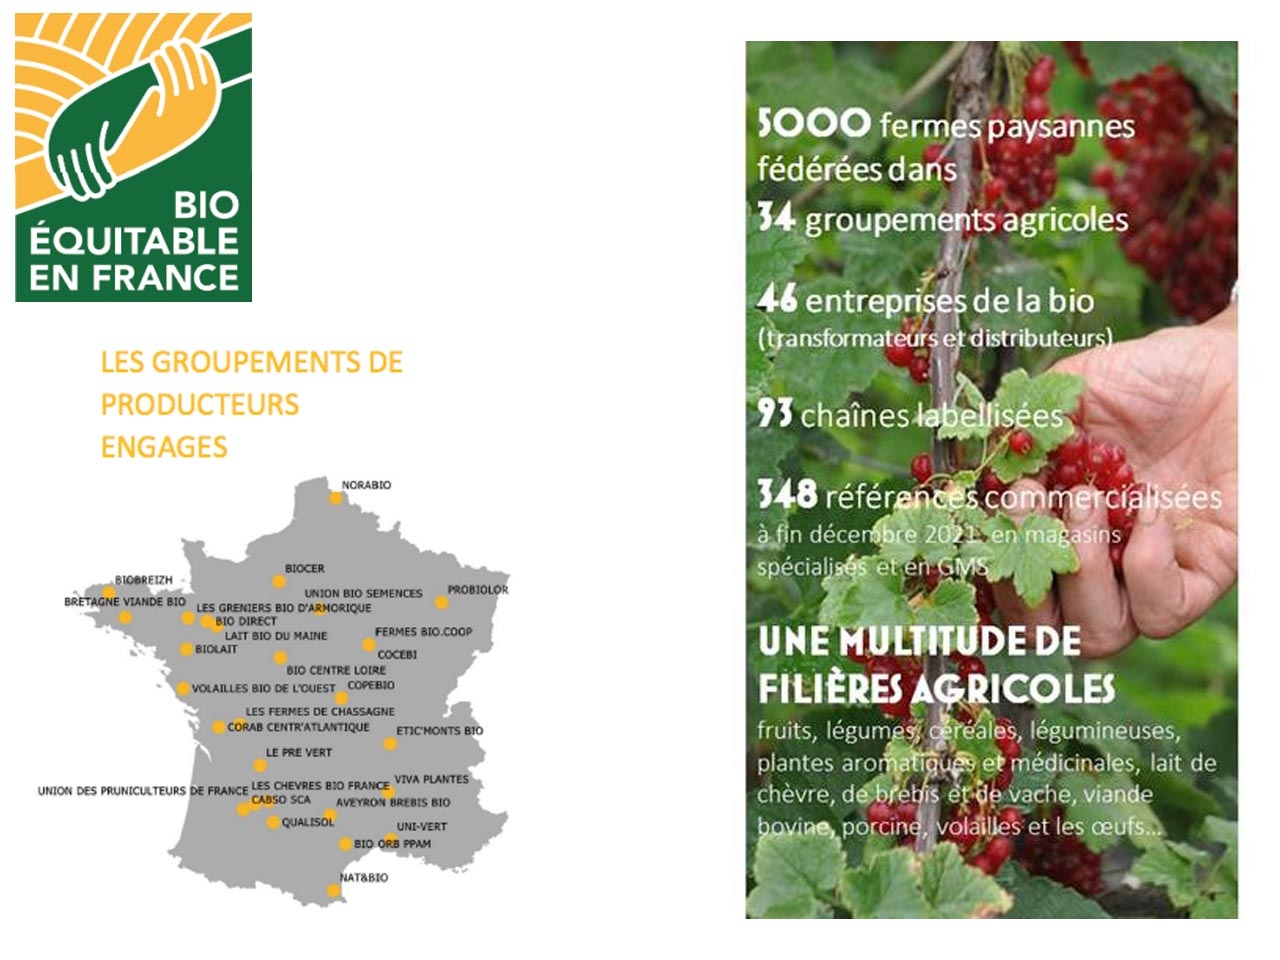 Le label bio équitable en France : piloté en majorité par des producteurs et une multitude de filières agricoles soutenues